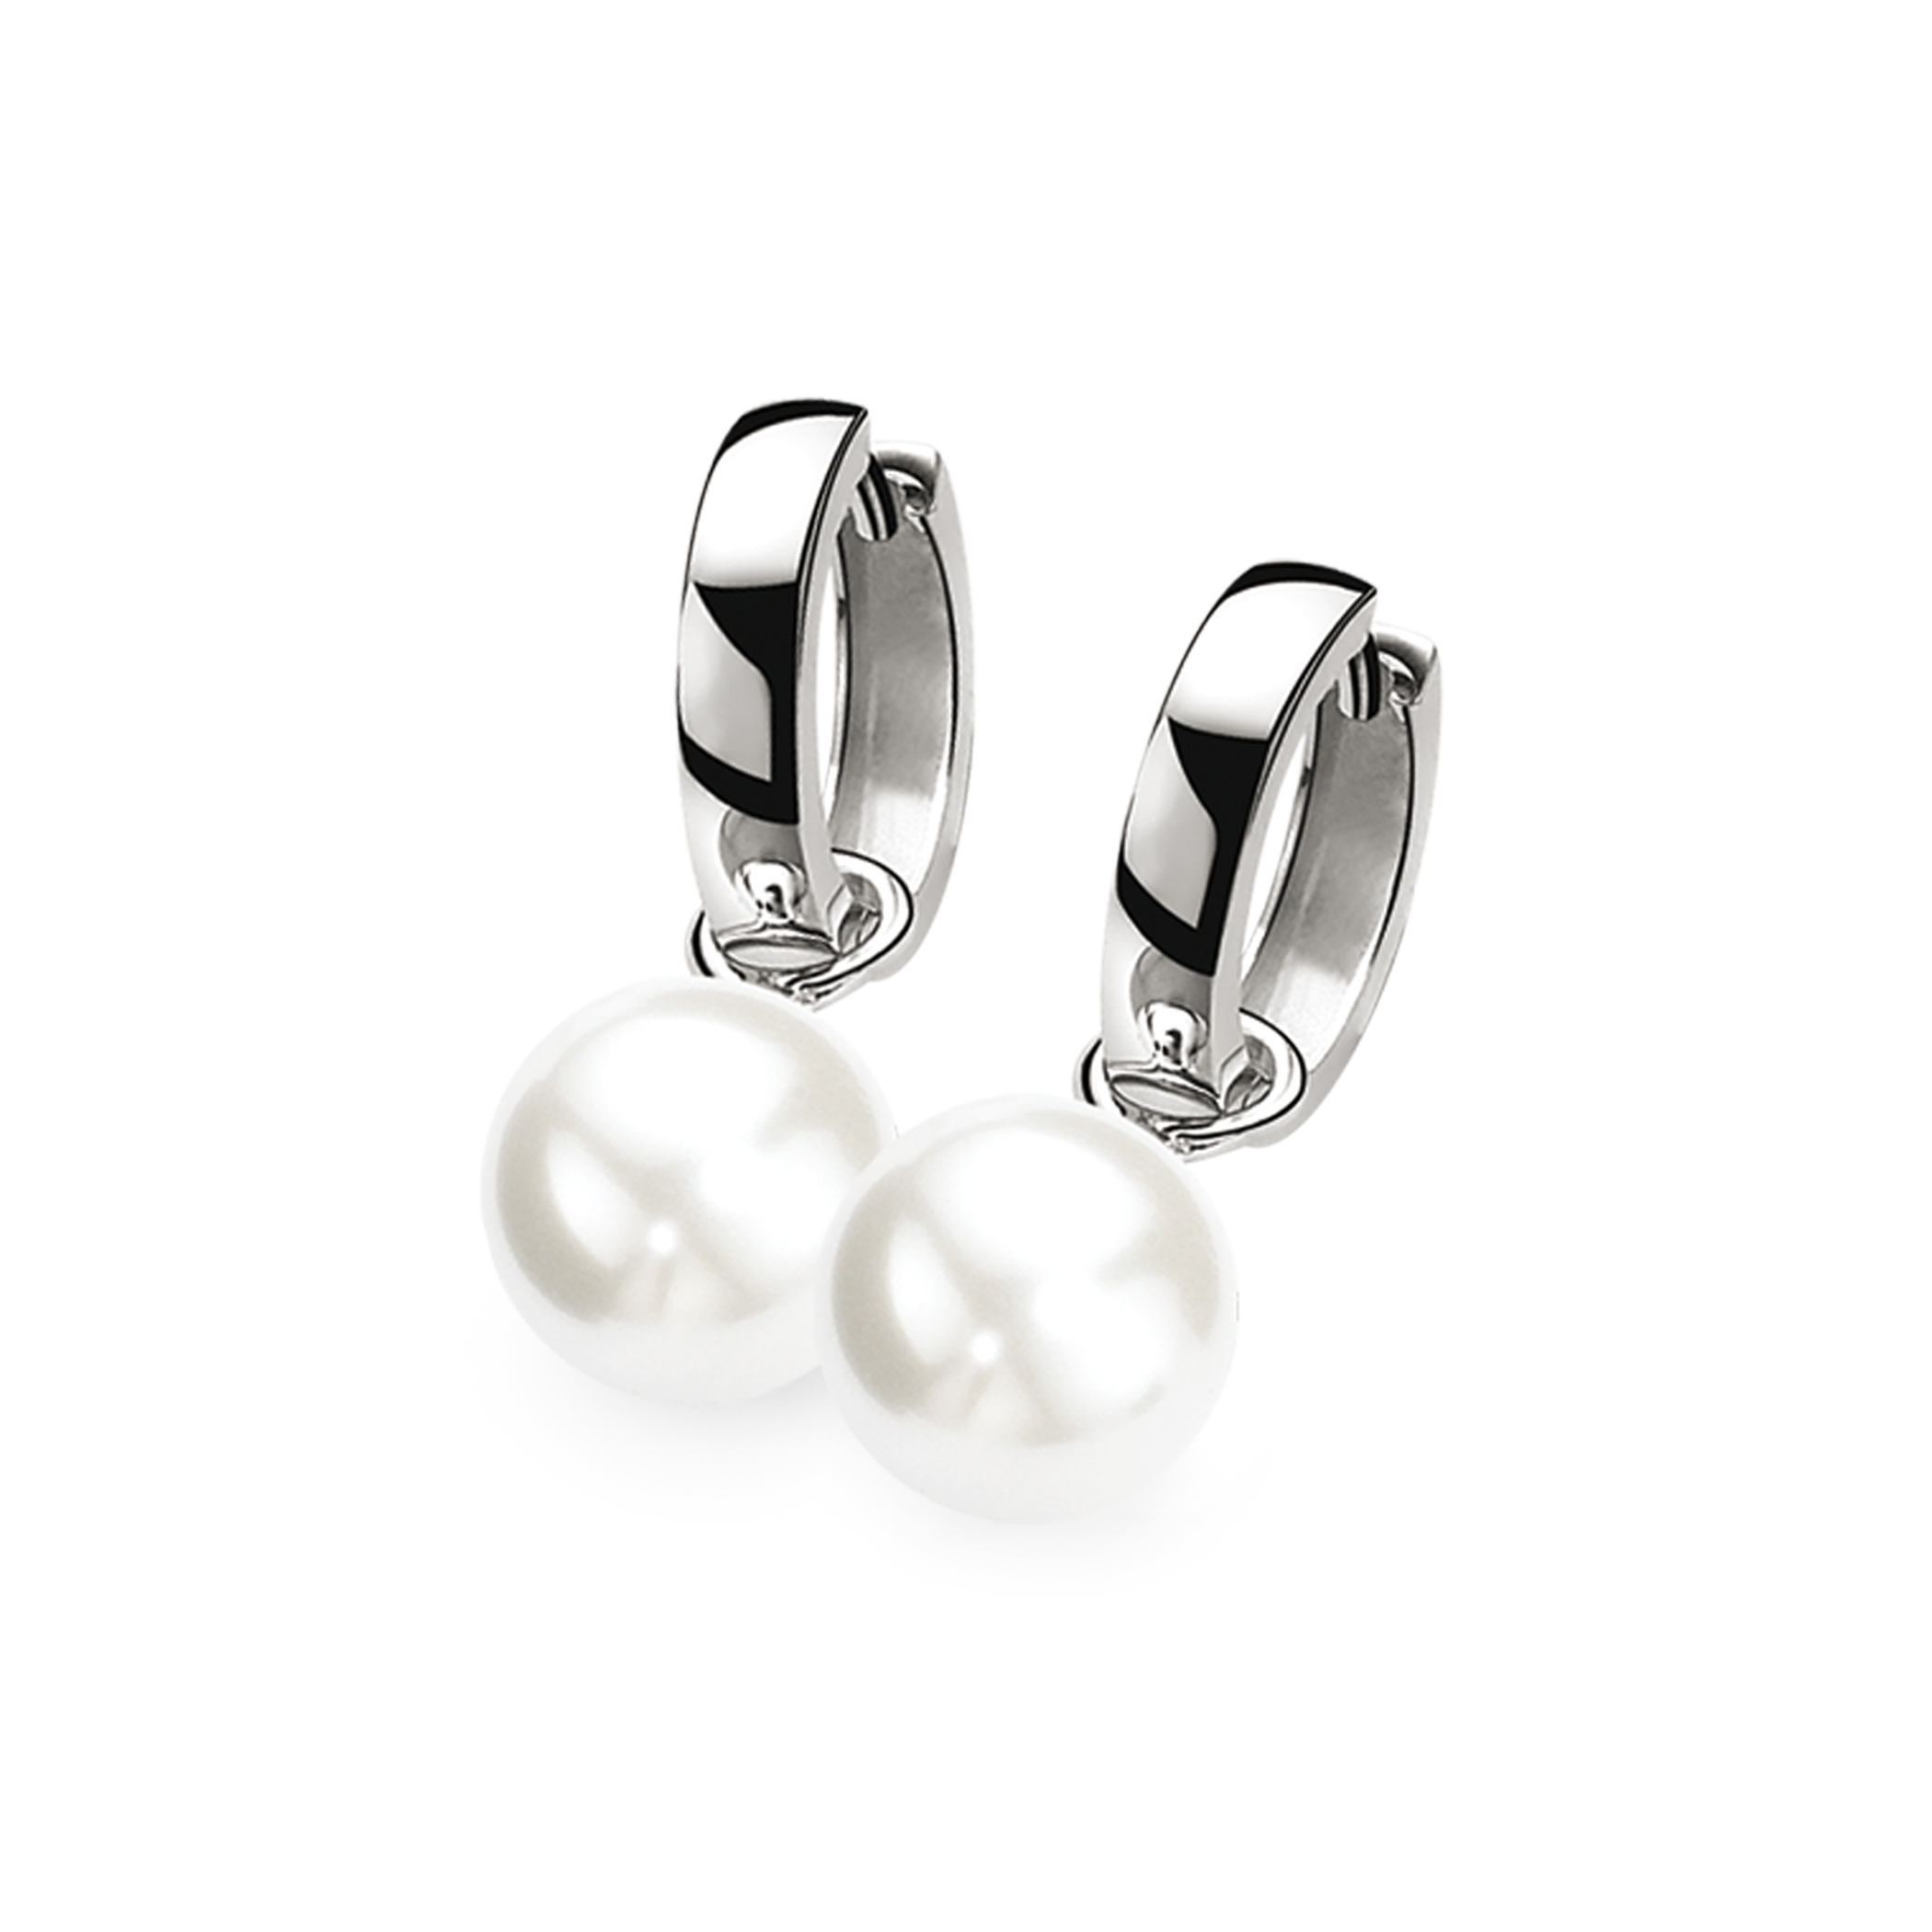 12mm ZINZI Sterling Silver Earrings Pendants Pearl White ZICH305W (excl. hoop earrings)